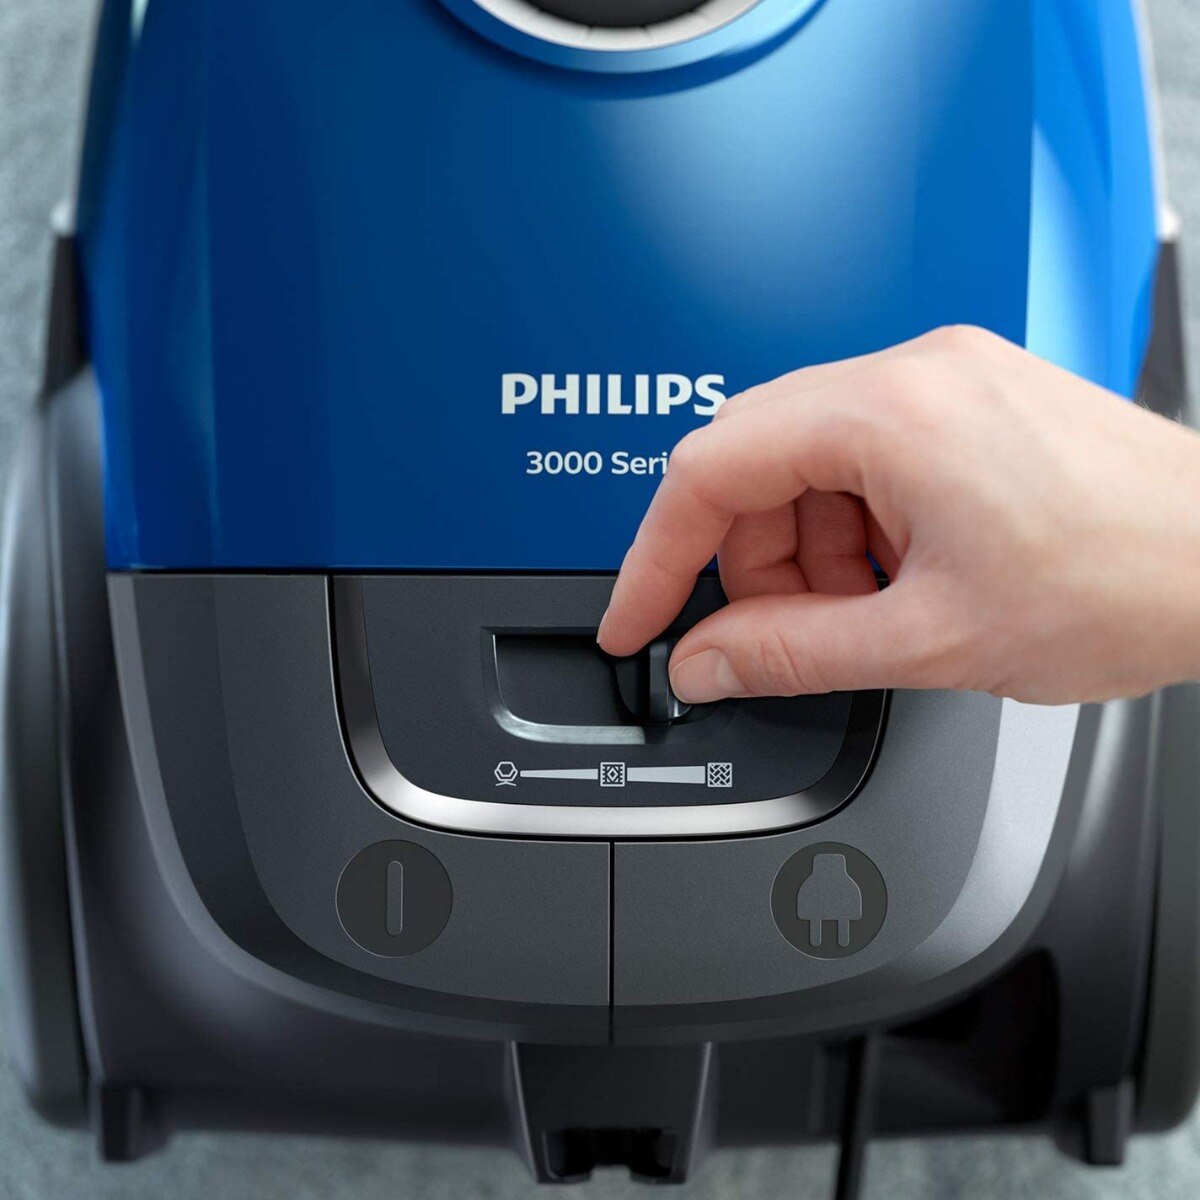 Philips 3000 купить. Филипс пылесос 3000 Series 900w. Philips xd3000/01. Philips xd3010 (xd3010/01). Пылесос Philips xd3010/01.